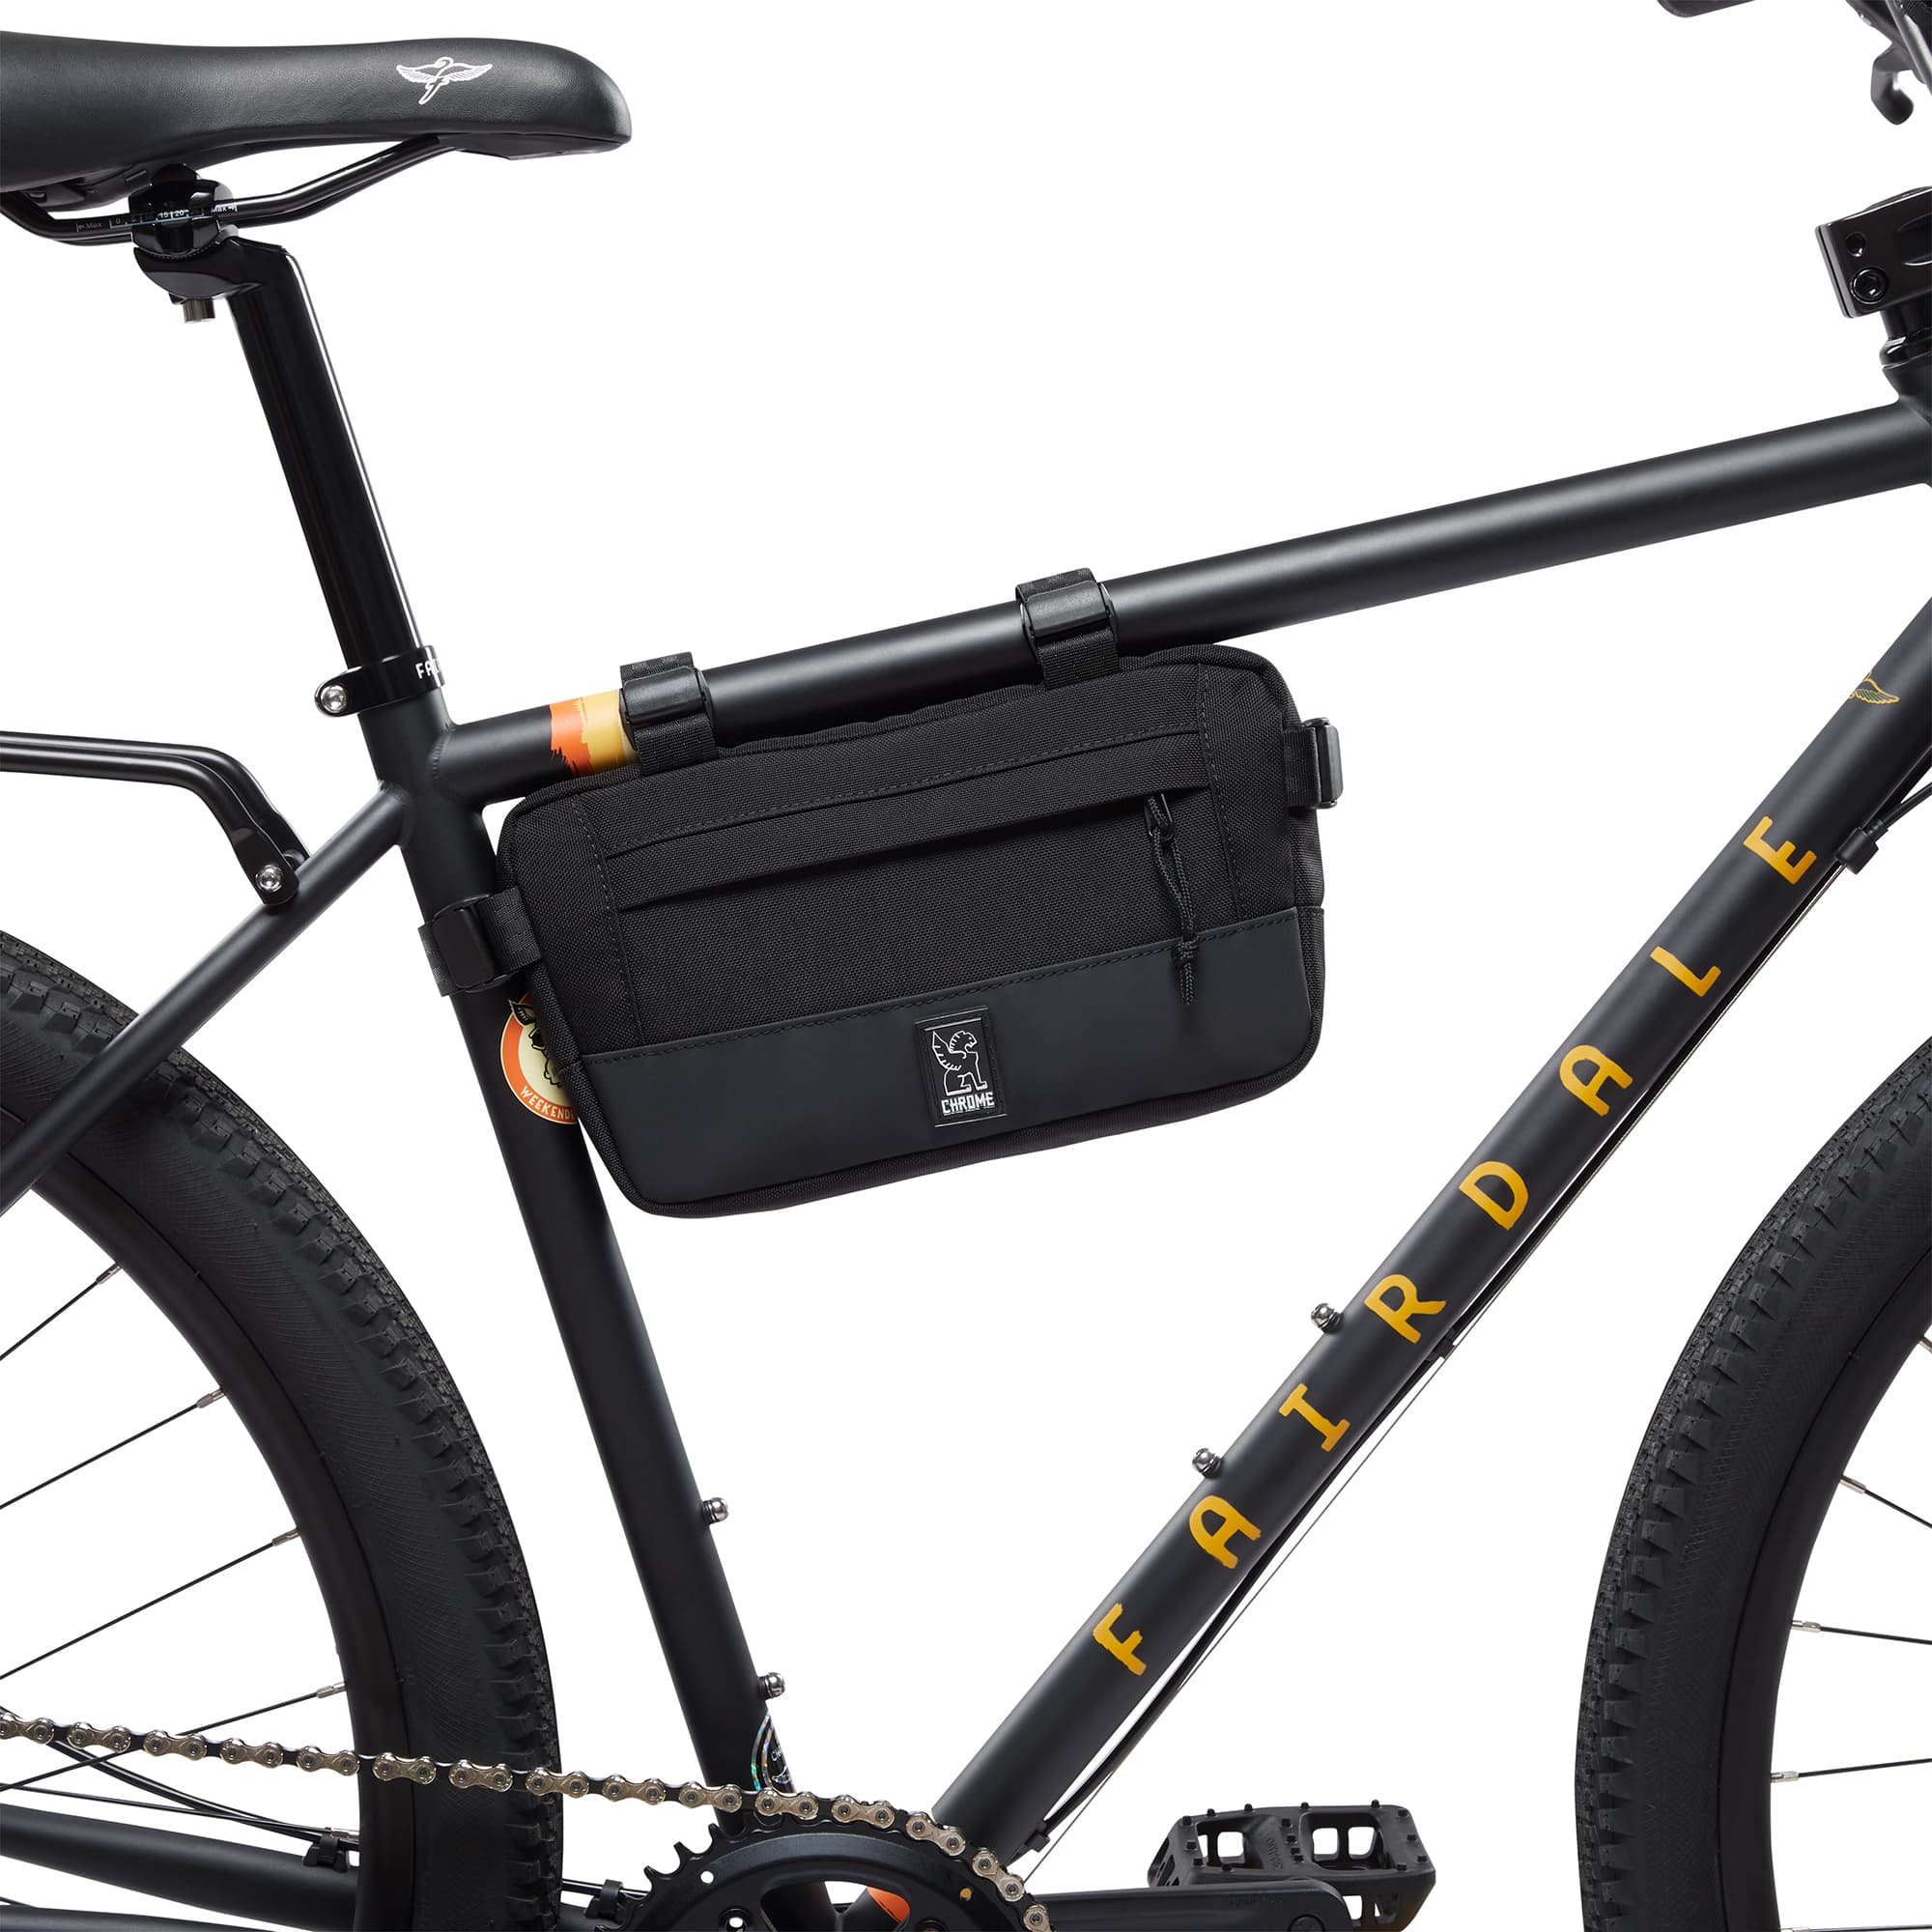 2L Doubletrack Frame Bag in black on a bike #color_black